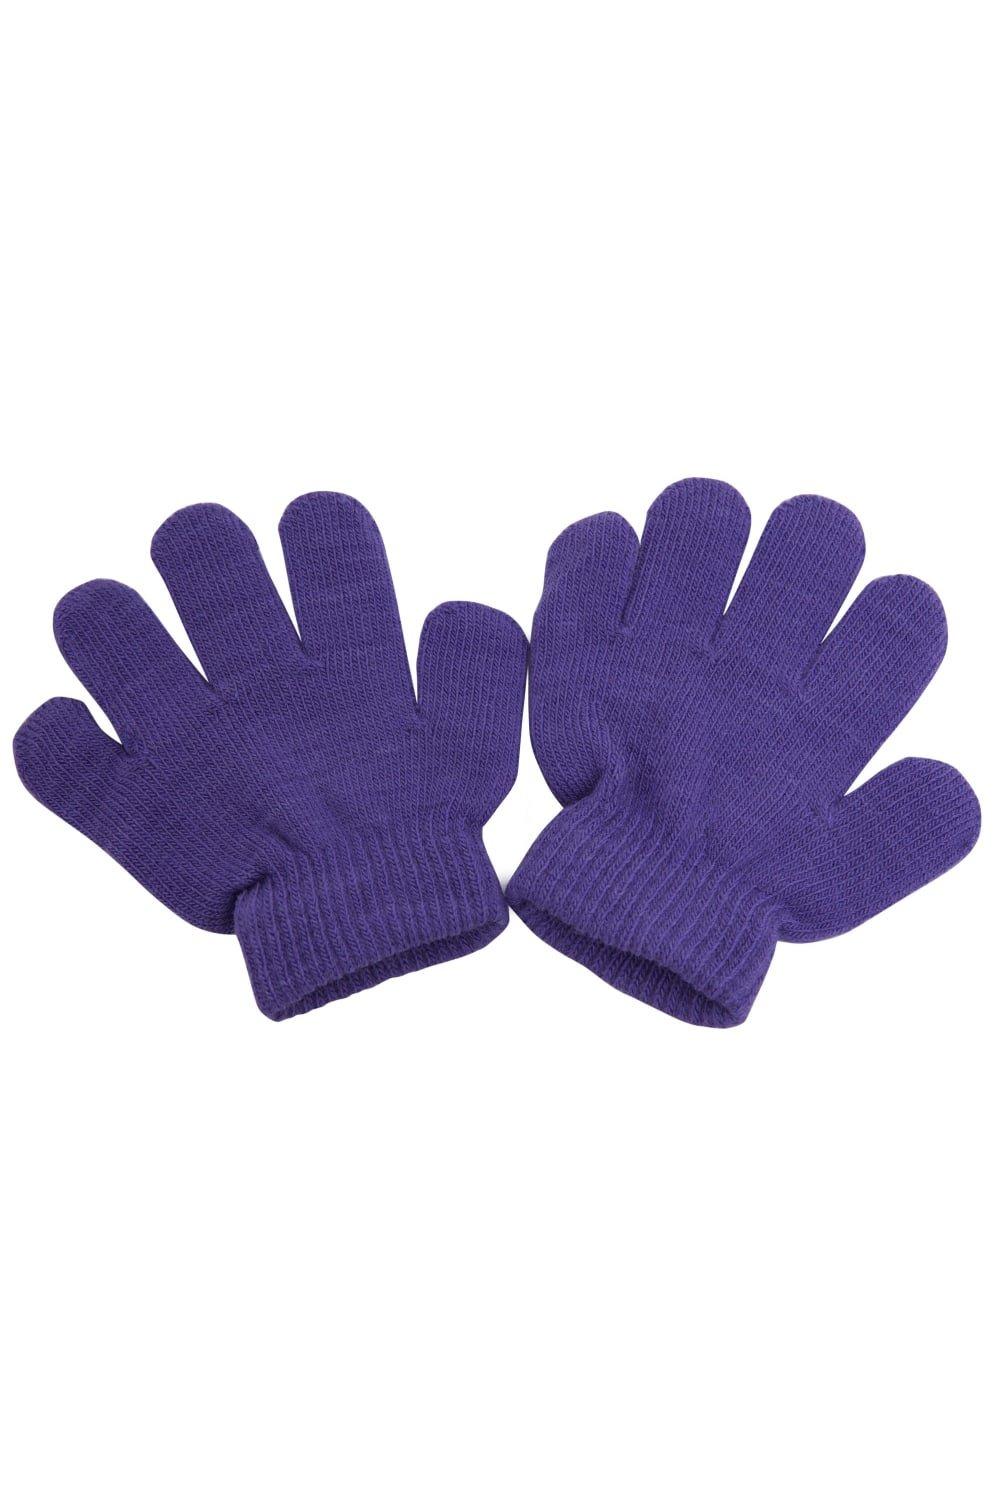 Зимние волшебные перчатки Universal Textiles, фиолетовый распродажа термовязаные зимние перчатки universal textiles серый